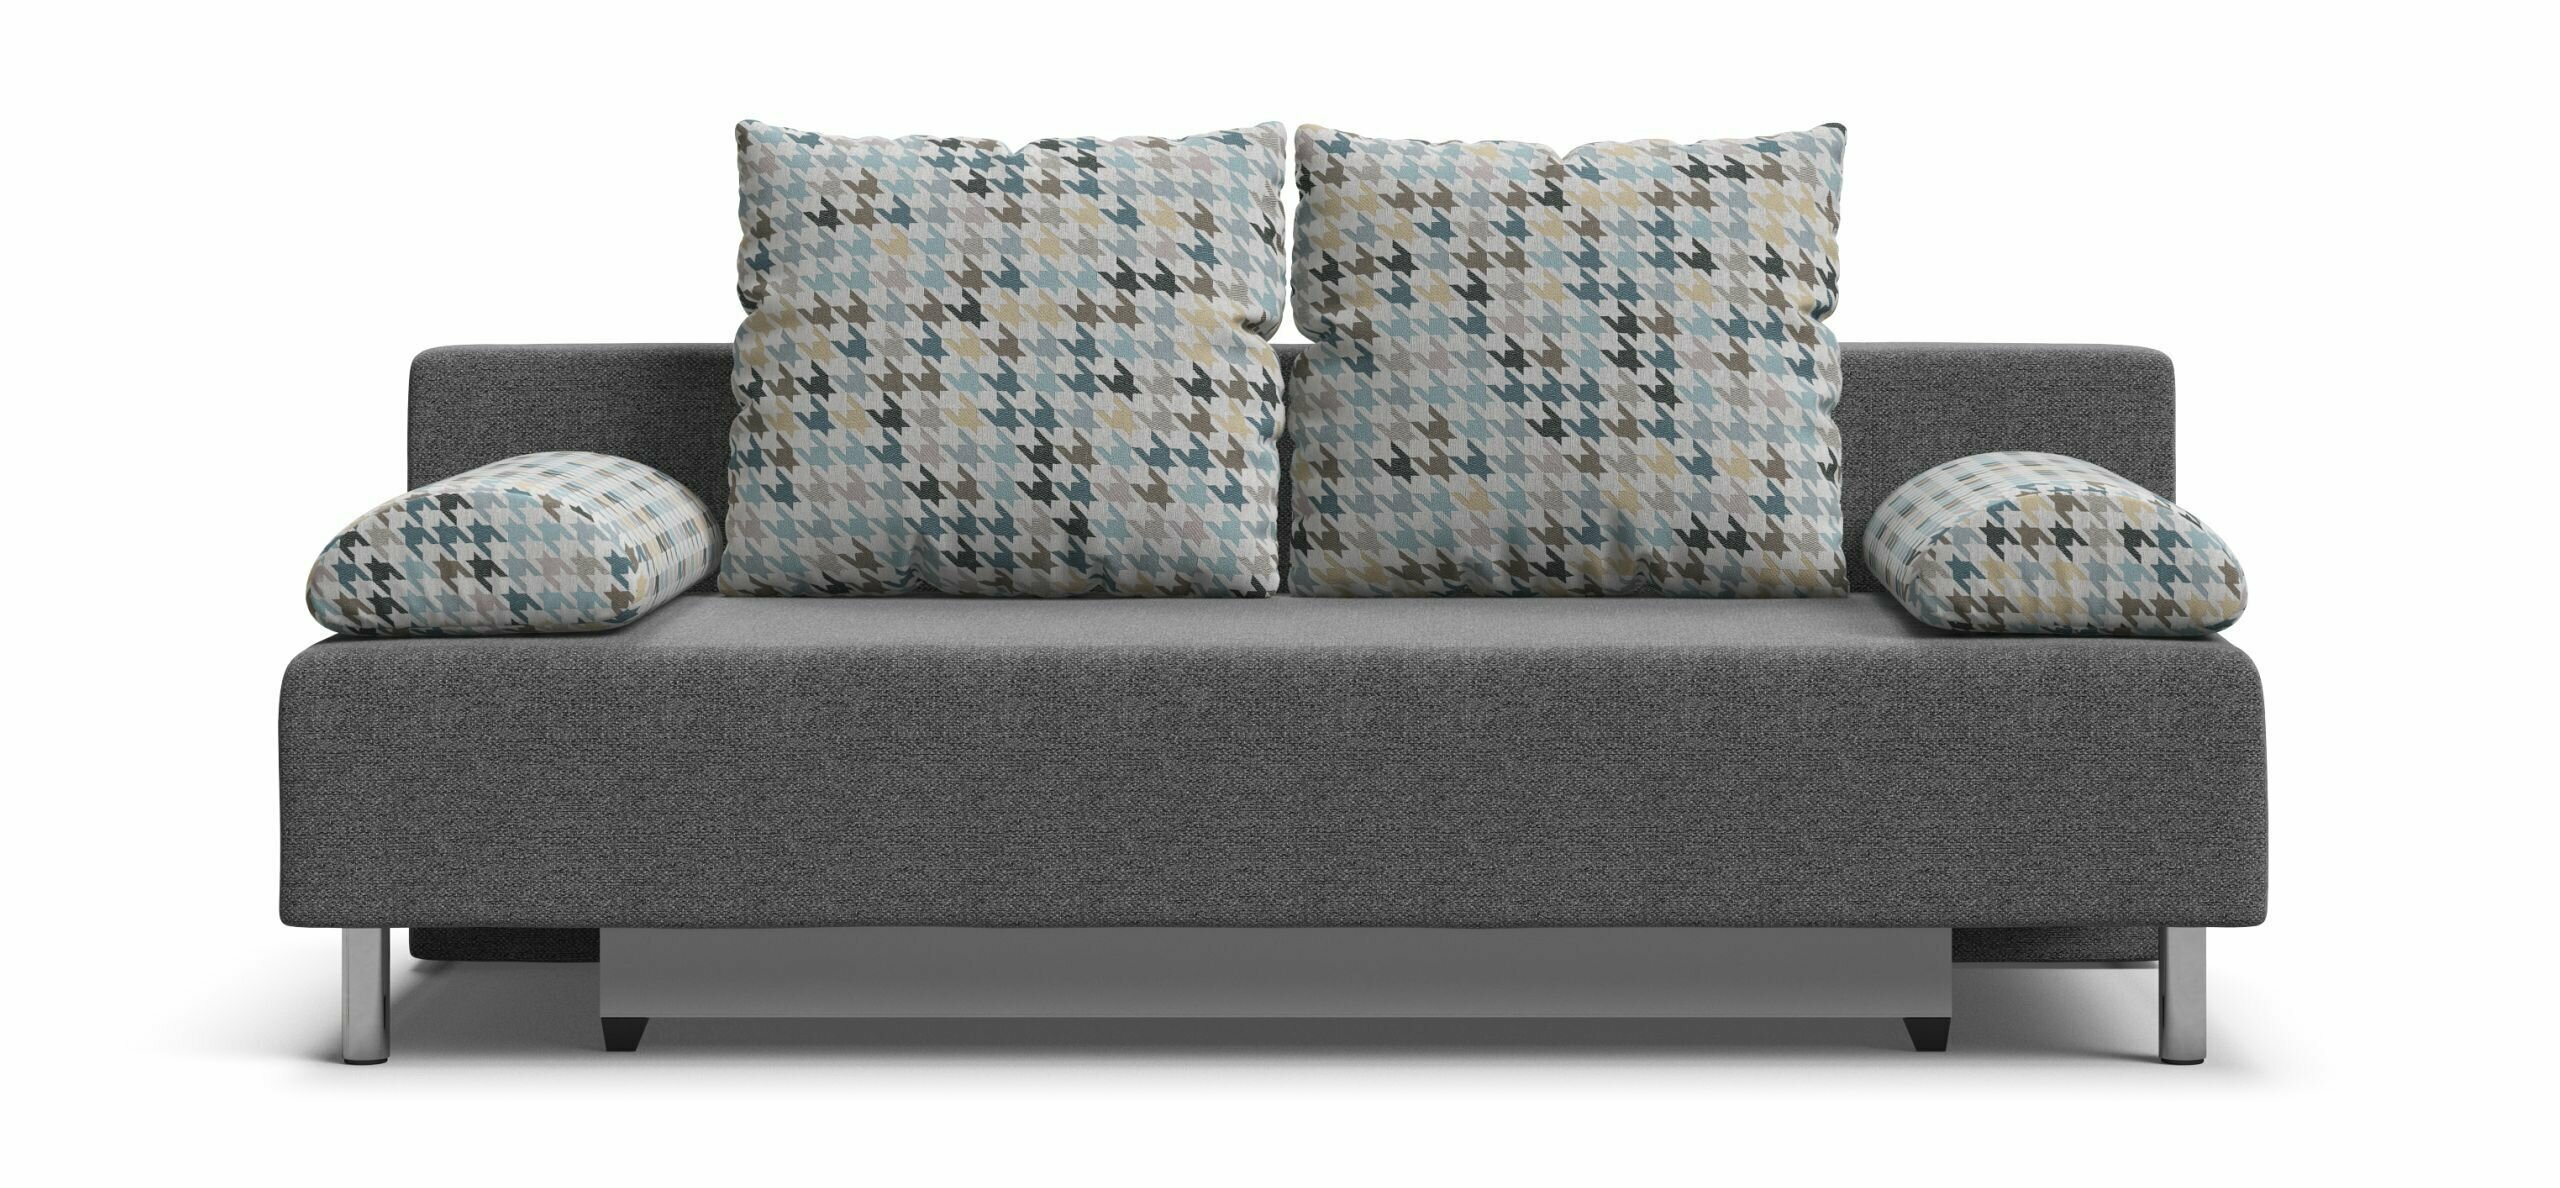 Диван-кровать с ящиками для хранения Мадрид НПБ, еврокнижка, рогожка Malmo серый/мозайка голубой, 200х95х98 см - фотография № 2